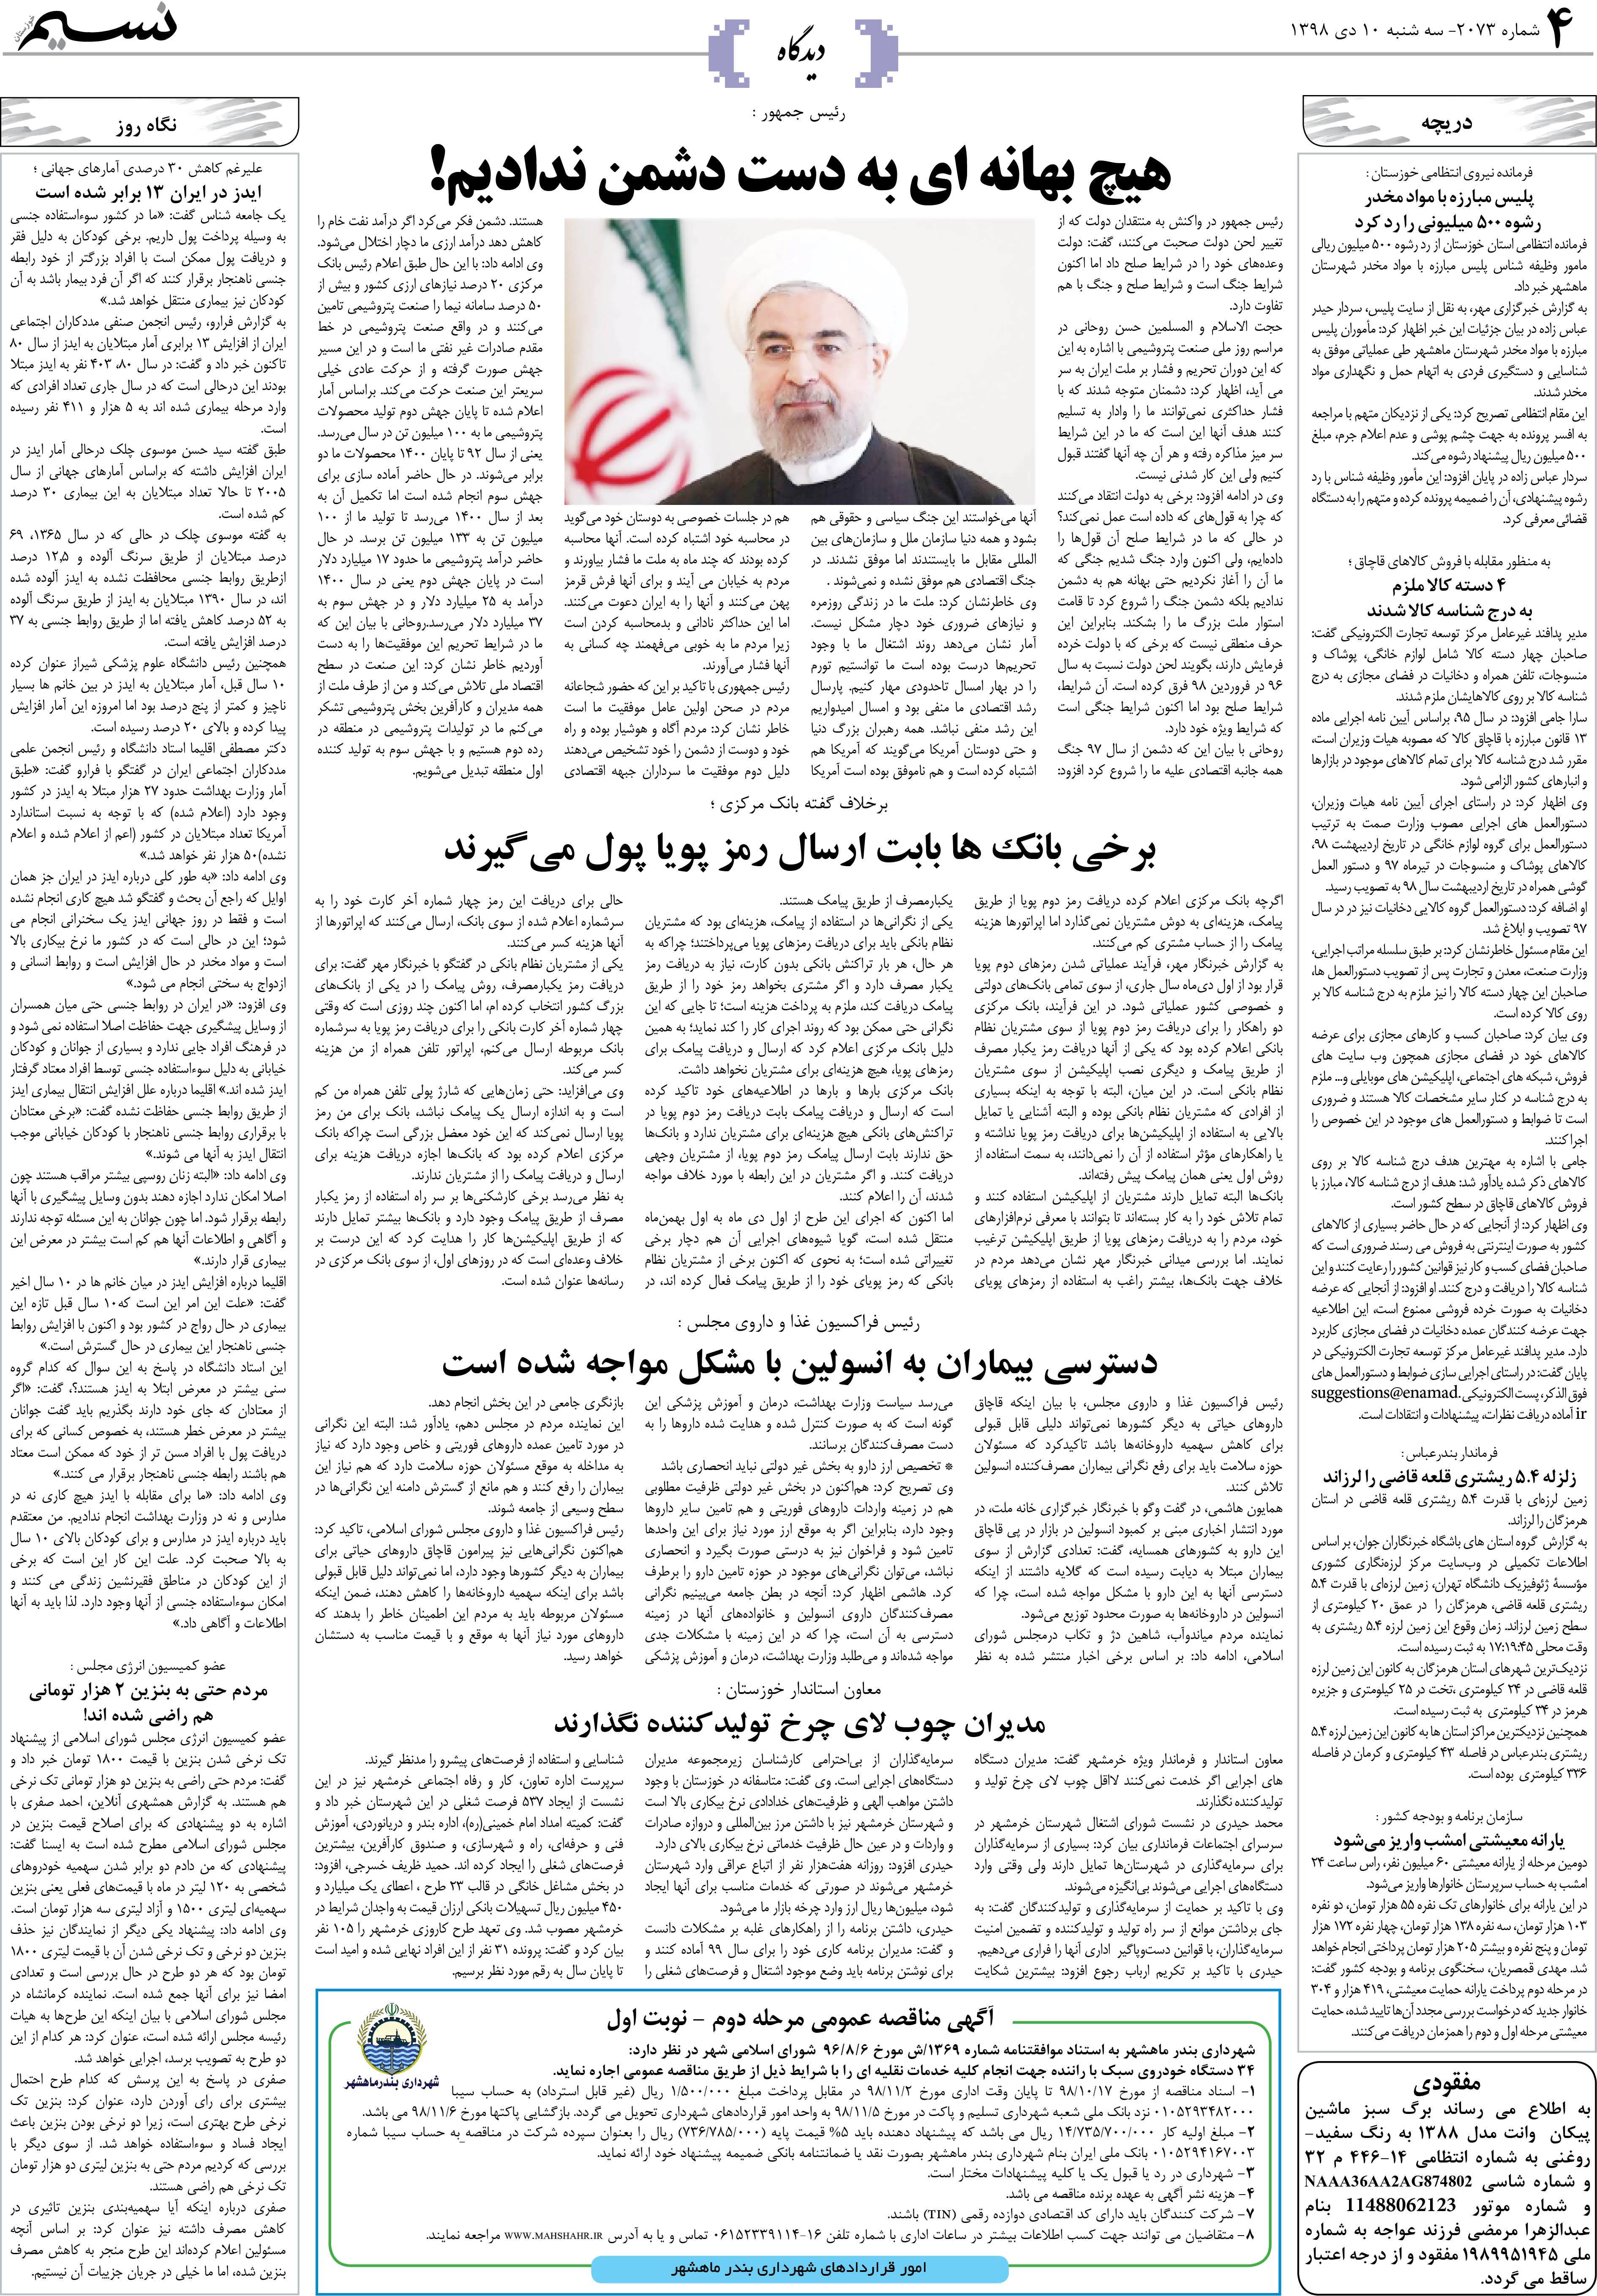 صفحه دیدگاه روزنامه نسیم شماره 2073